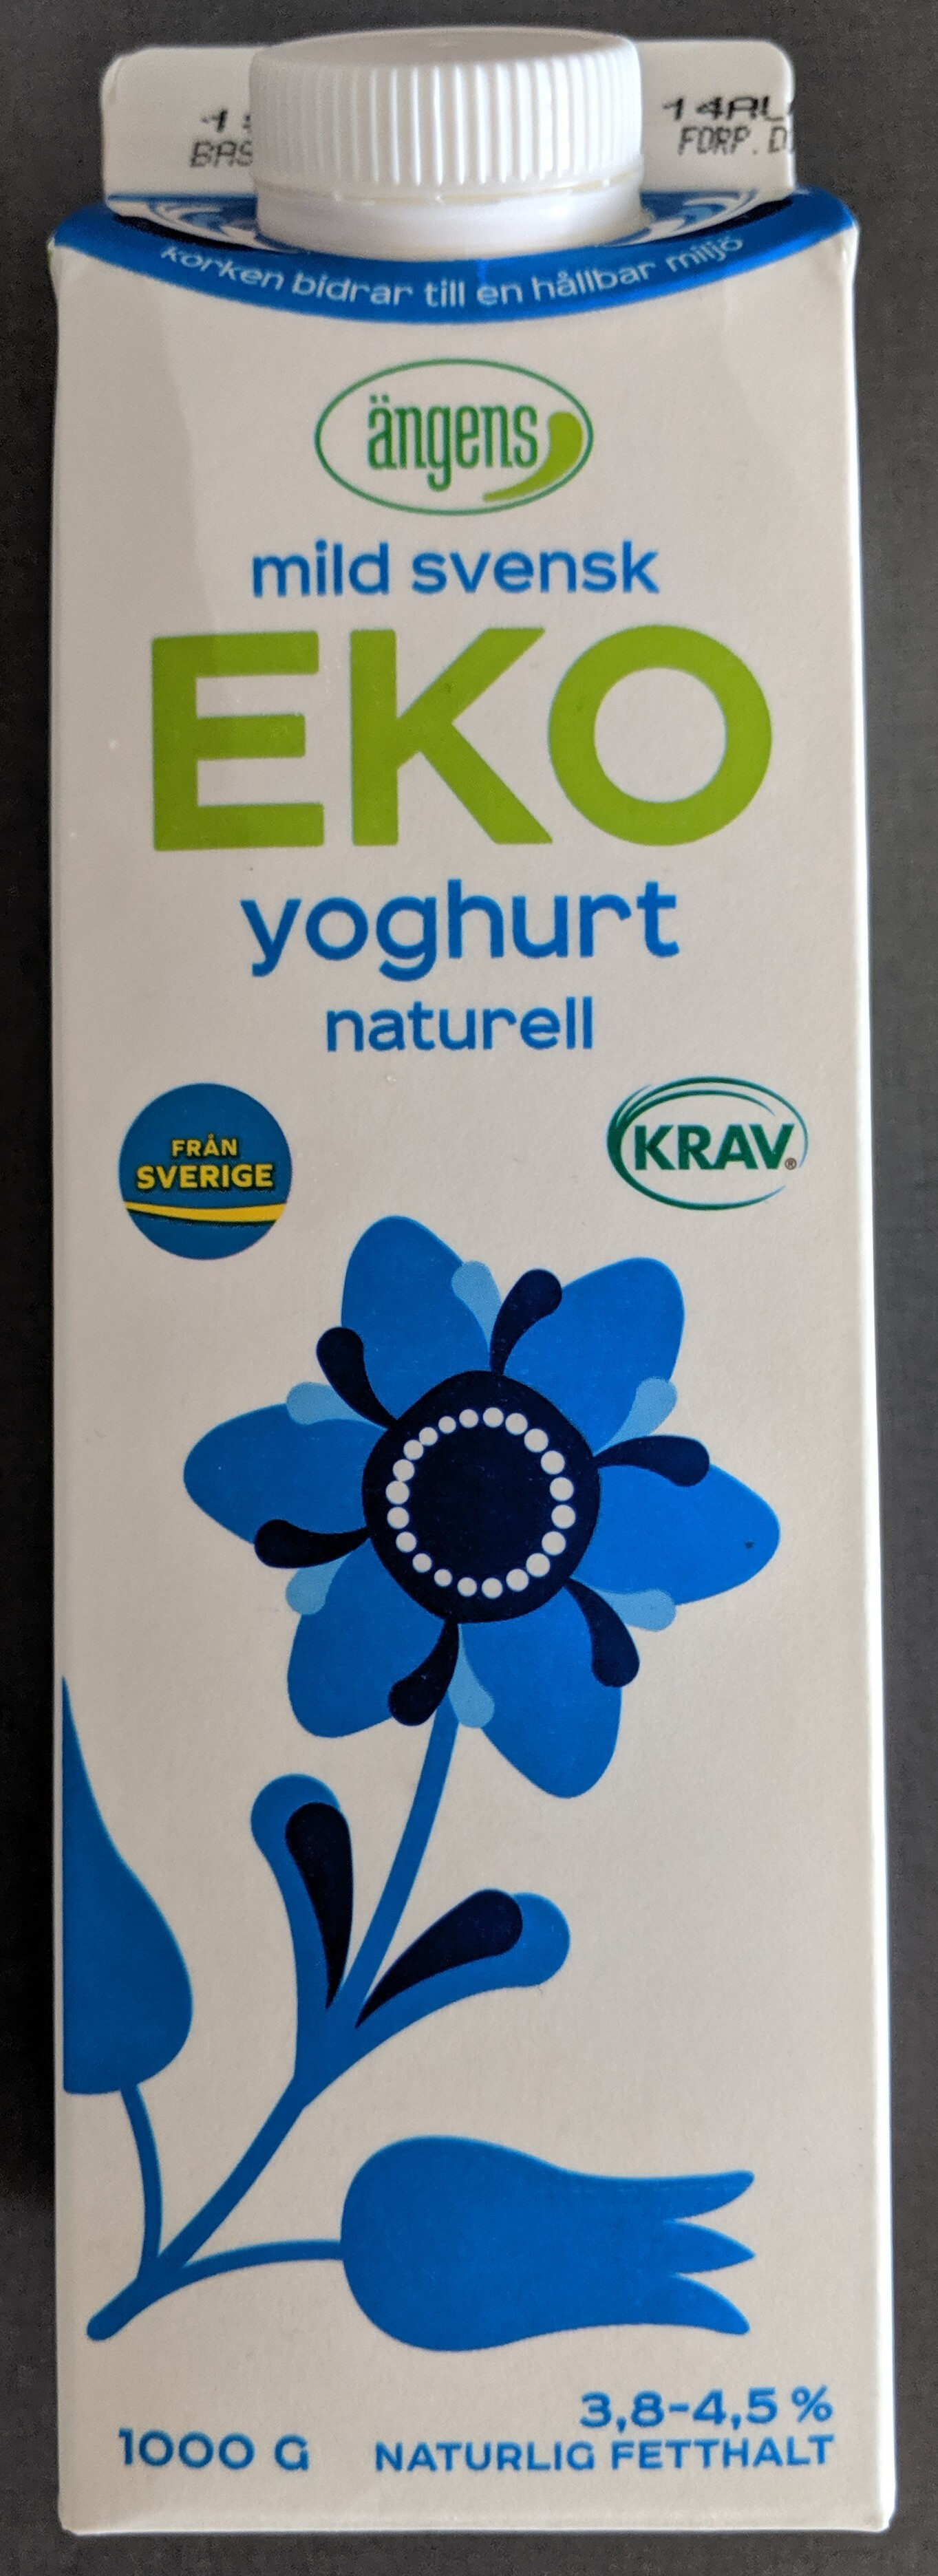 ängens mild svensk eko yoghurt naturell - Produkt